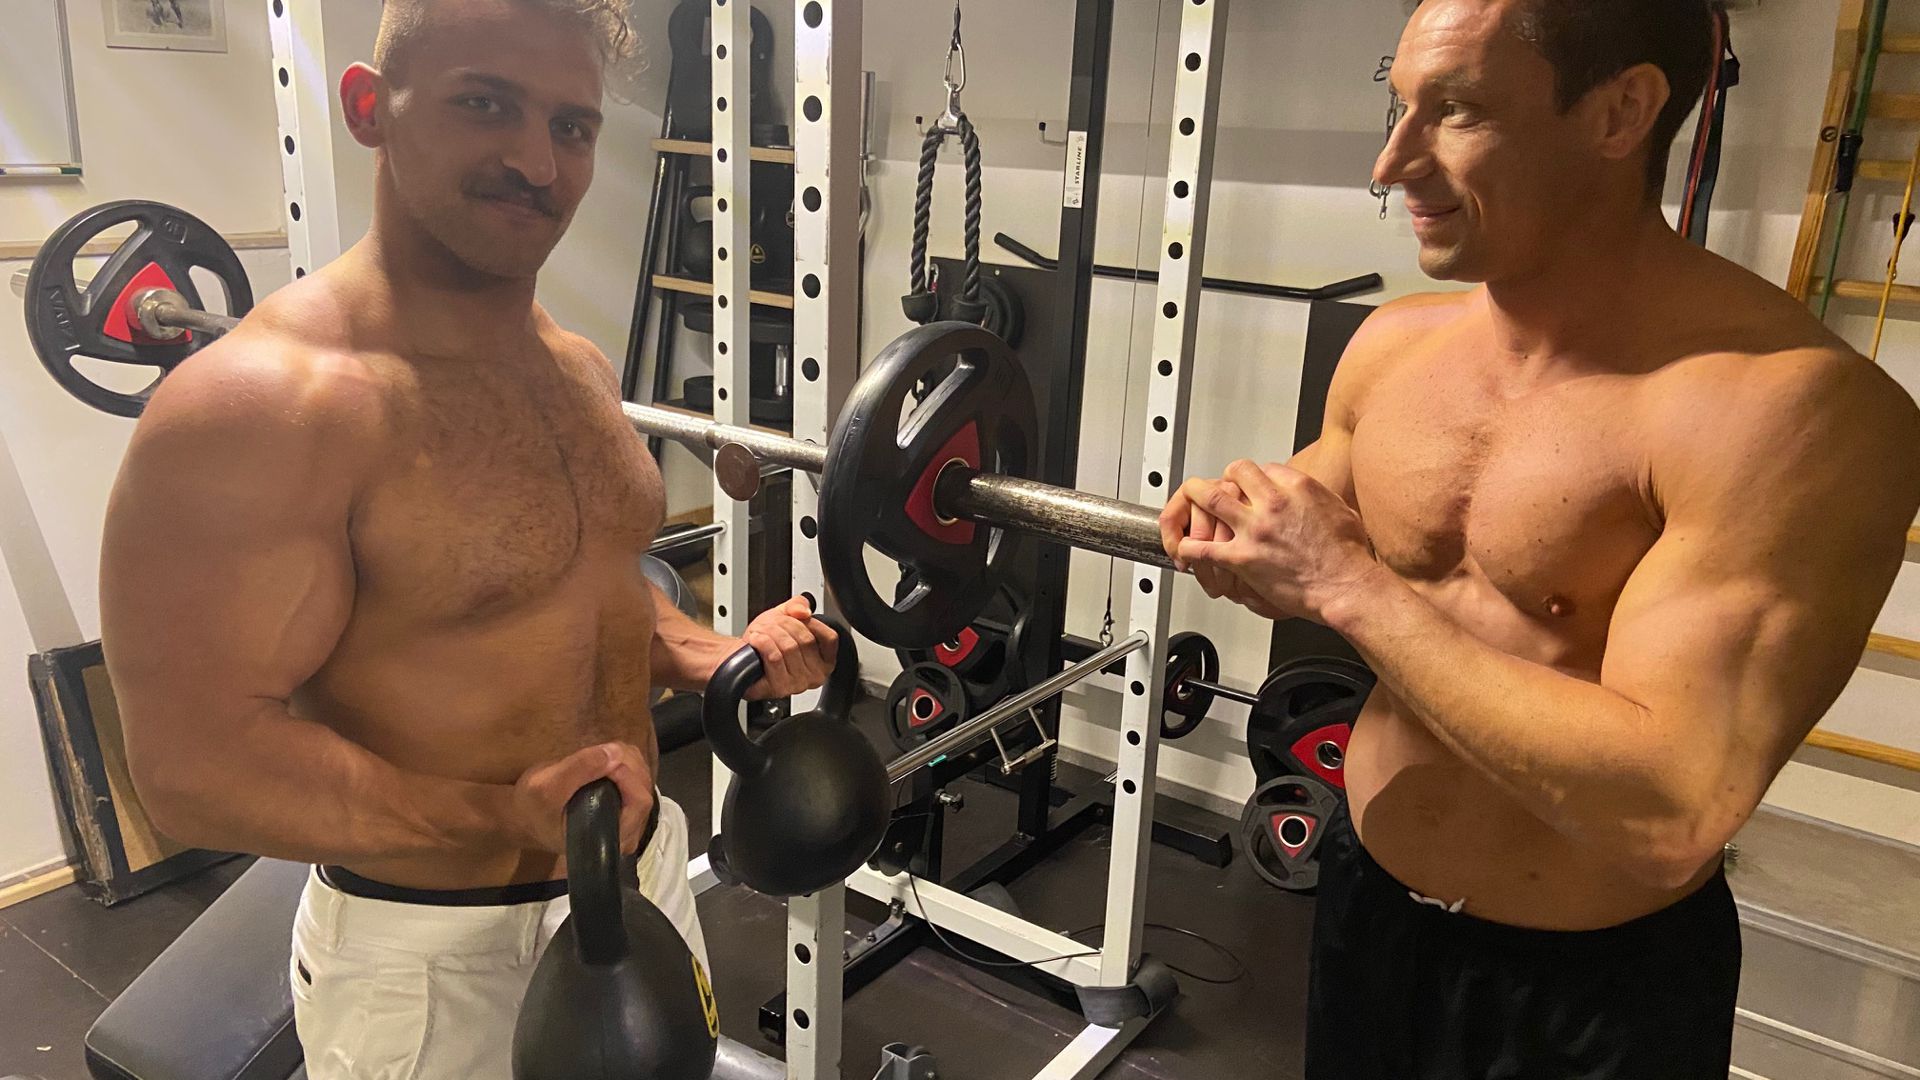 Mohamad, genannt Mo, aus Syrien und Jochen Weisert aus Oberderdingen teilen die Liebe zum Bodybuilding. Seit einigen Jahren trainieren die beiden zusammen und bereiten sich gemeinsam auf Wettkämpfe vor. Aus der Trainingsgemeinschaft ist eine tiefe Freundschaft erwachsen. 